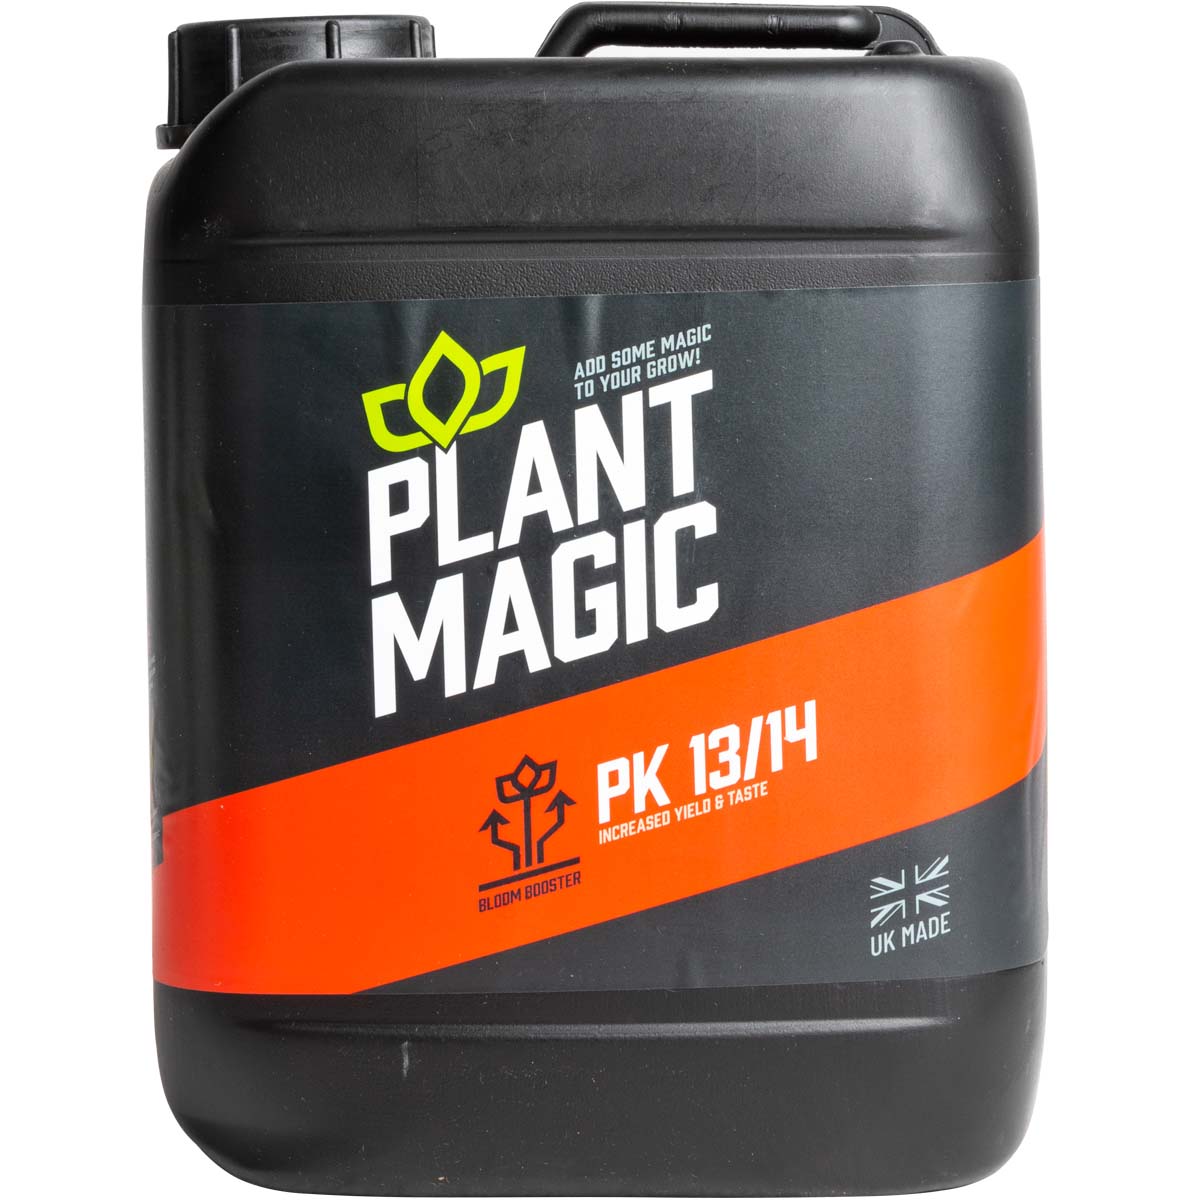 Plant Magic - PK 13/14